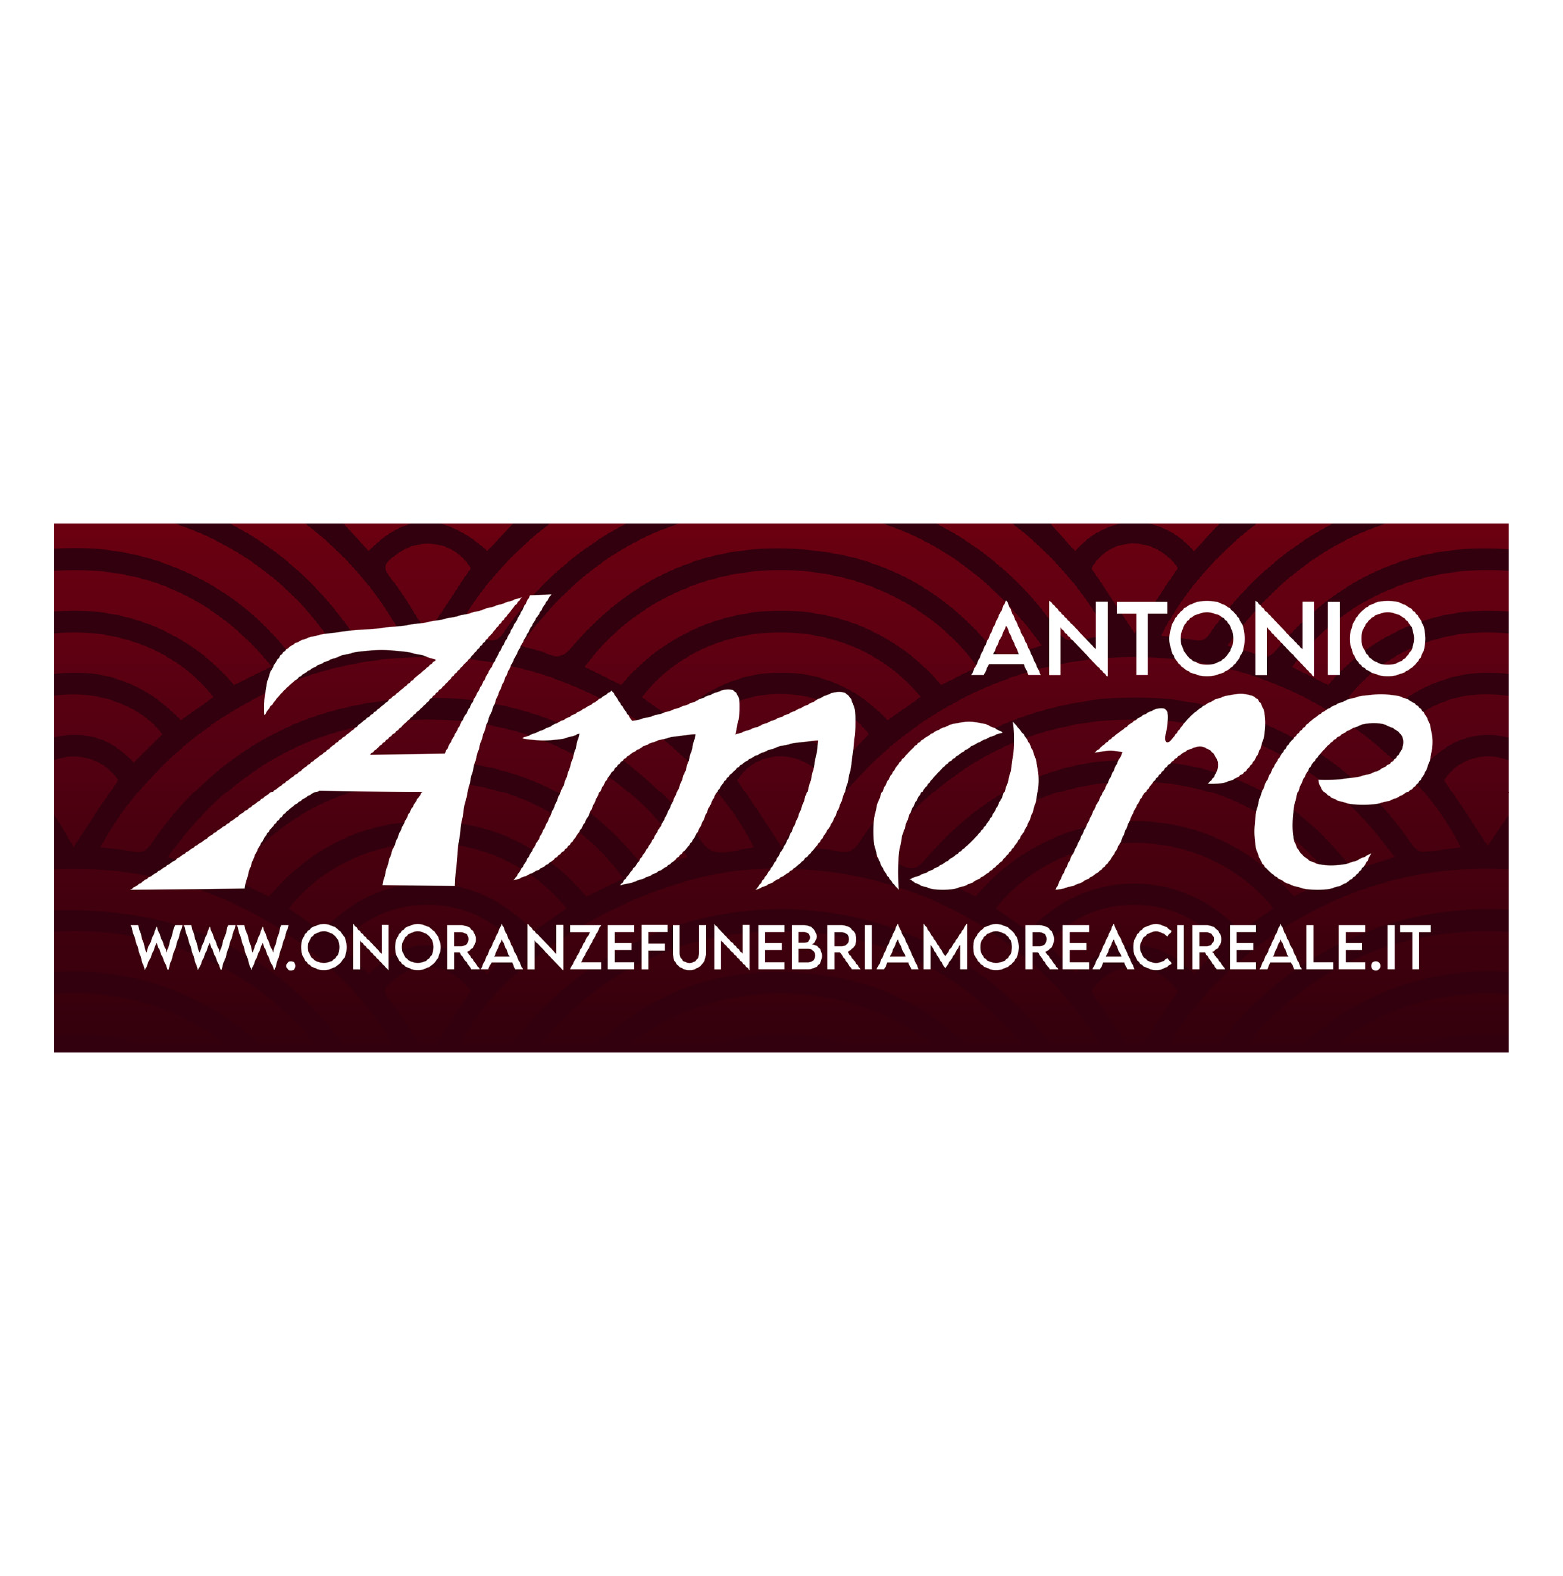 Antonio Amore